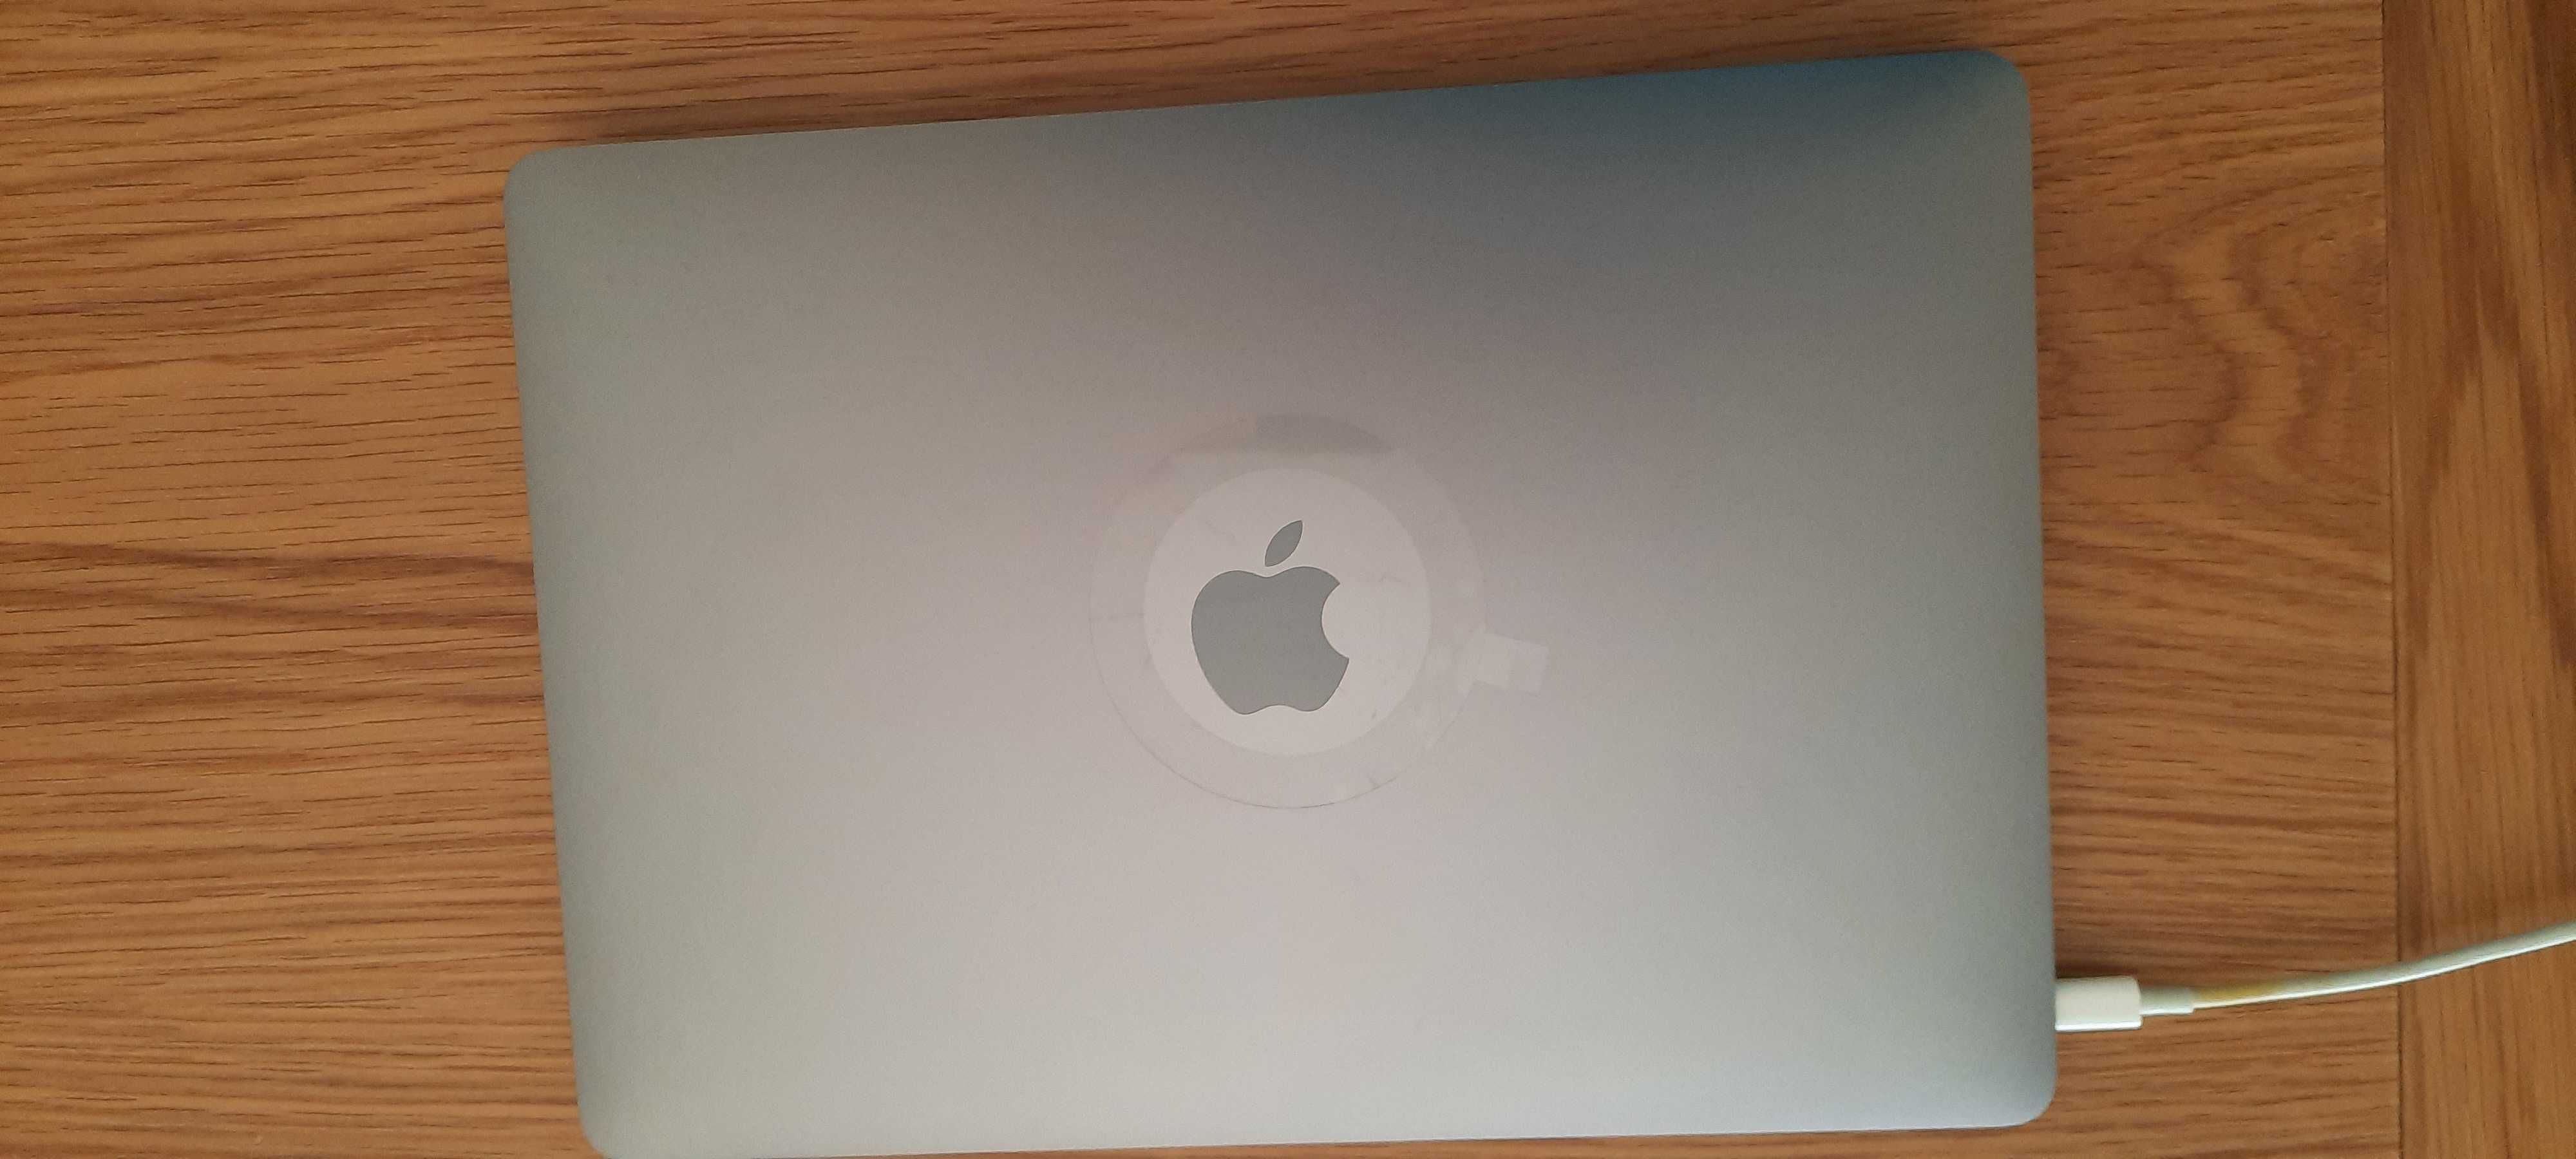 Apple MacBook Pro 13,3" Late 2016